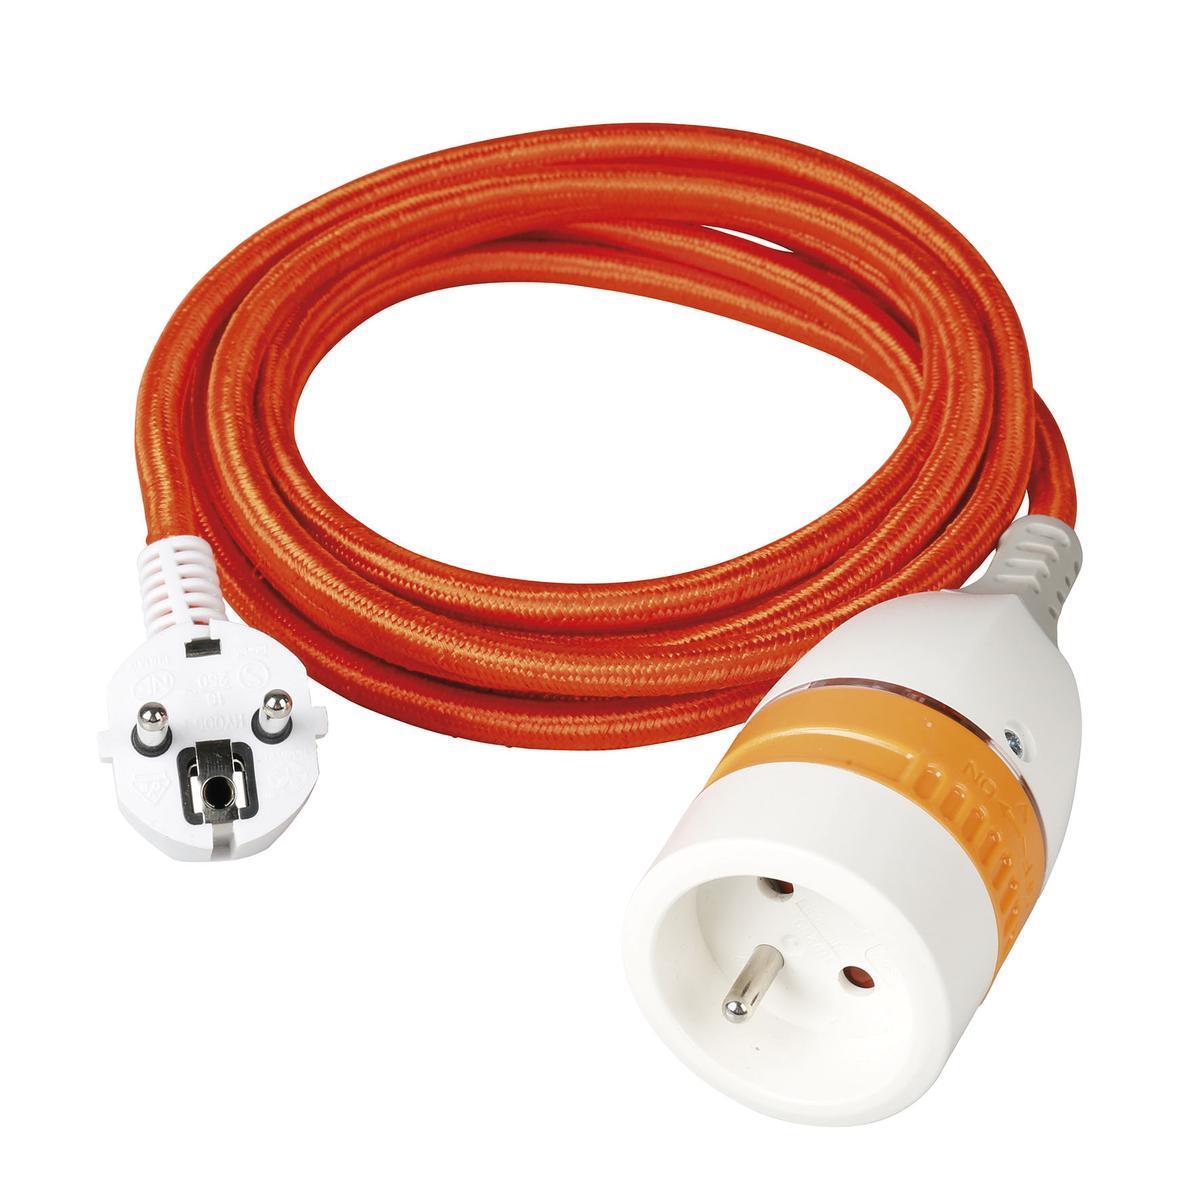 Prolongateur internet et cable - L 3 m - Orange